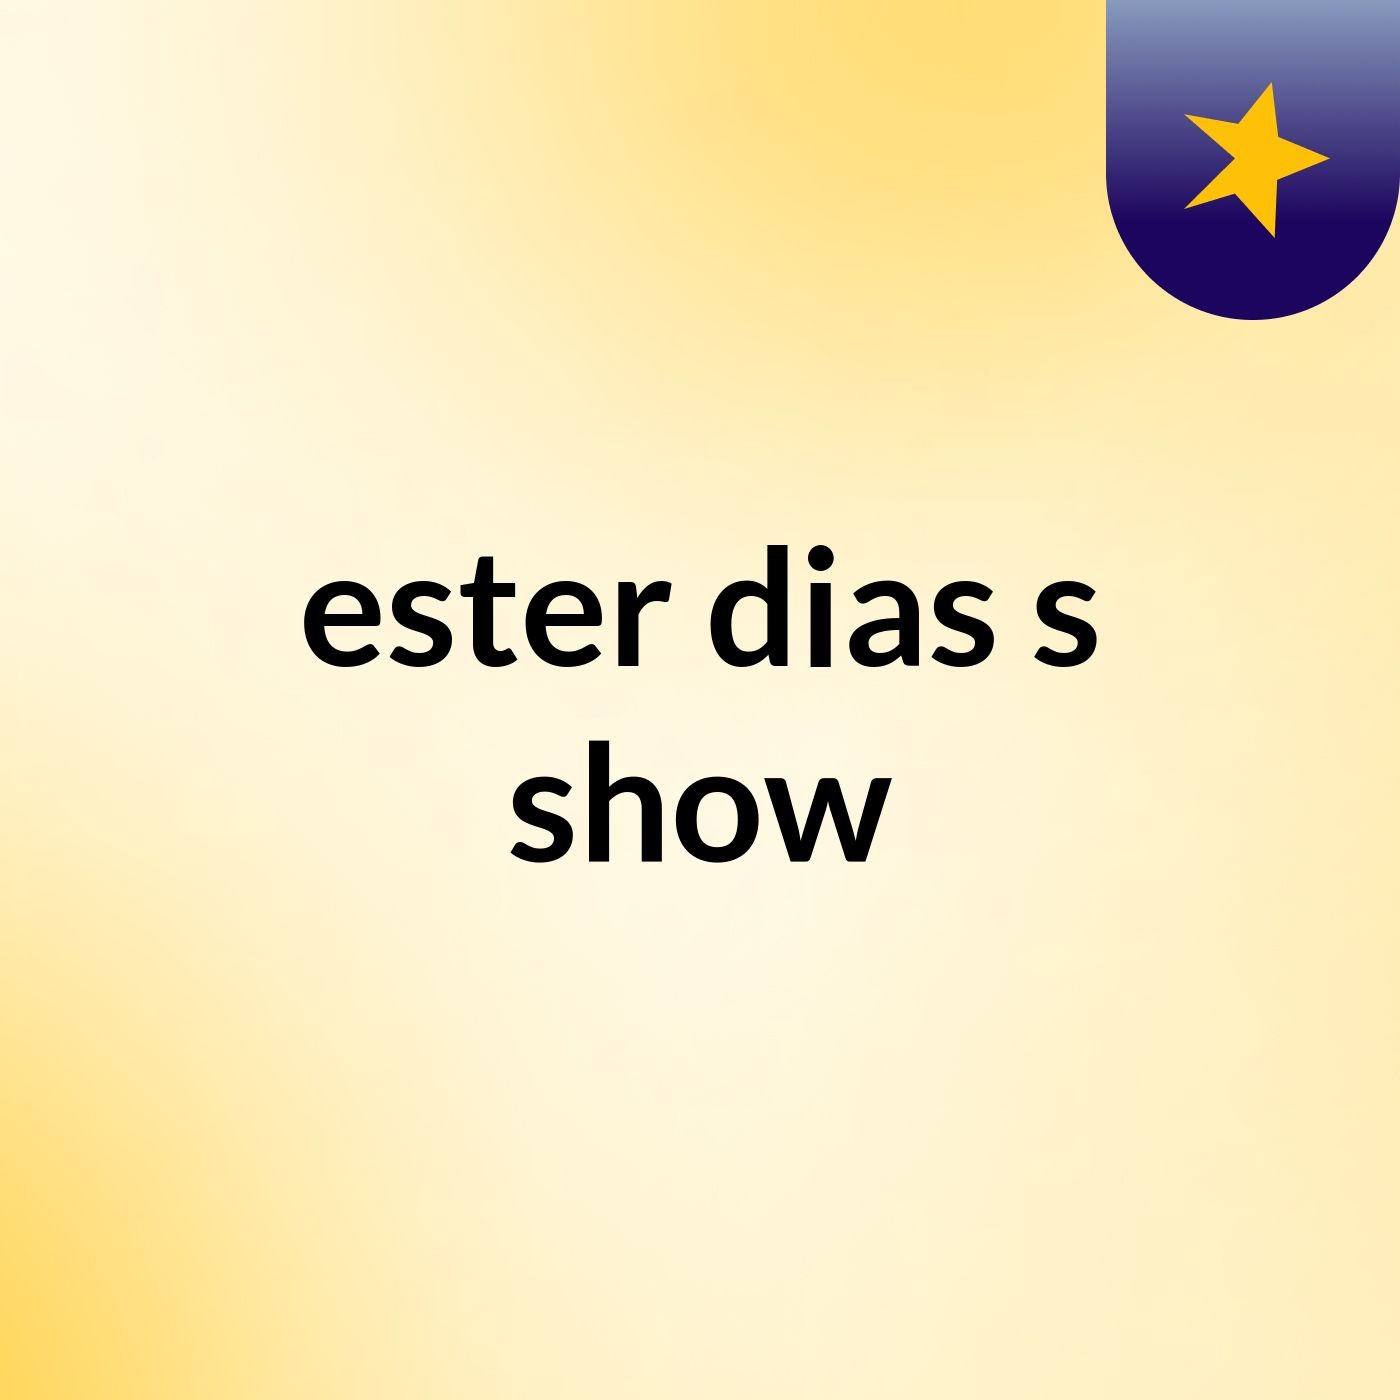 ester dias's show